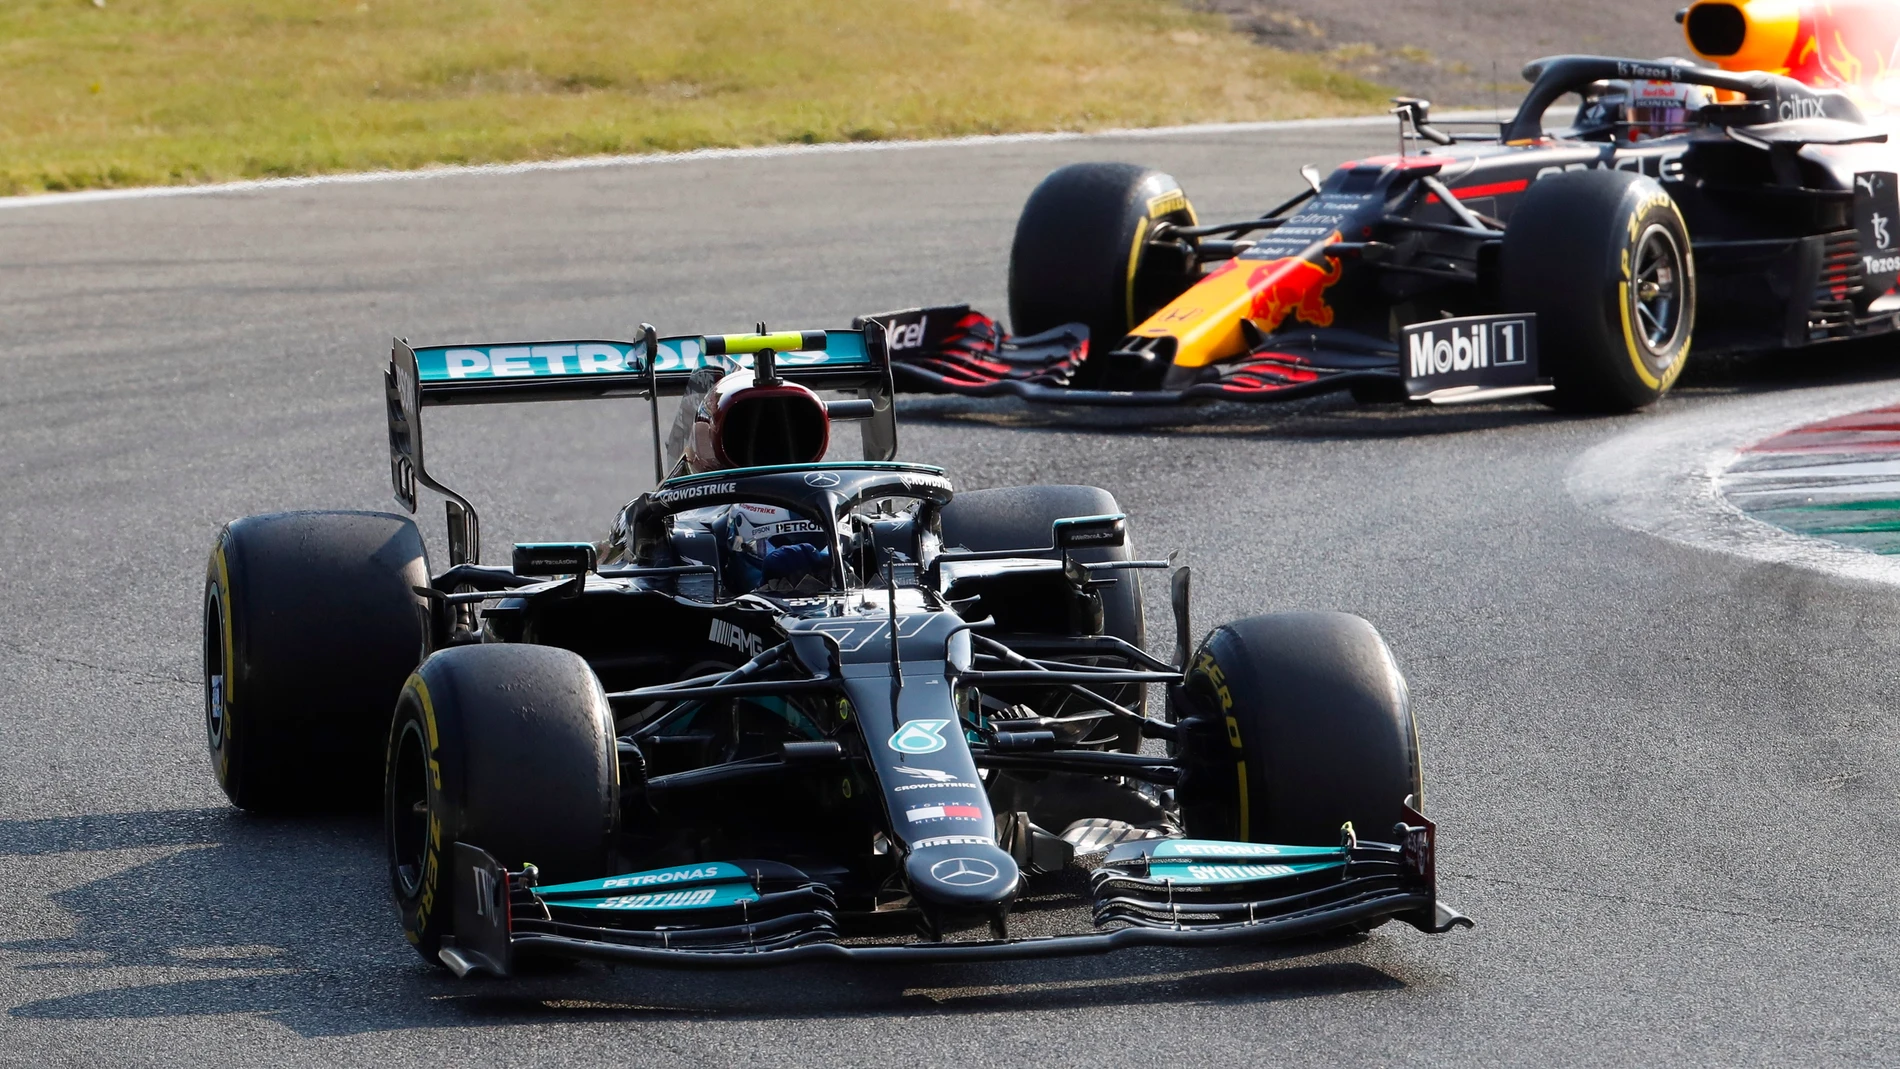 Bottas mantiene la pole en el sprint de Monza por delante de Verstappen, Hamilton saldrá 5º